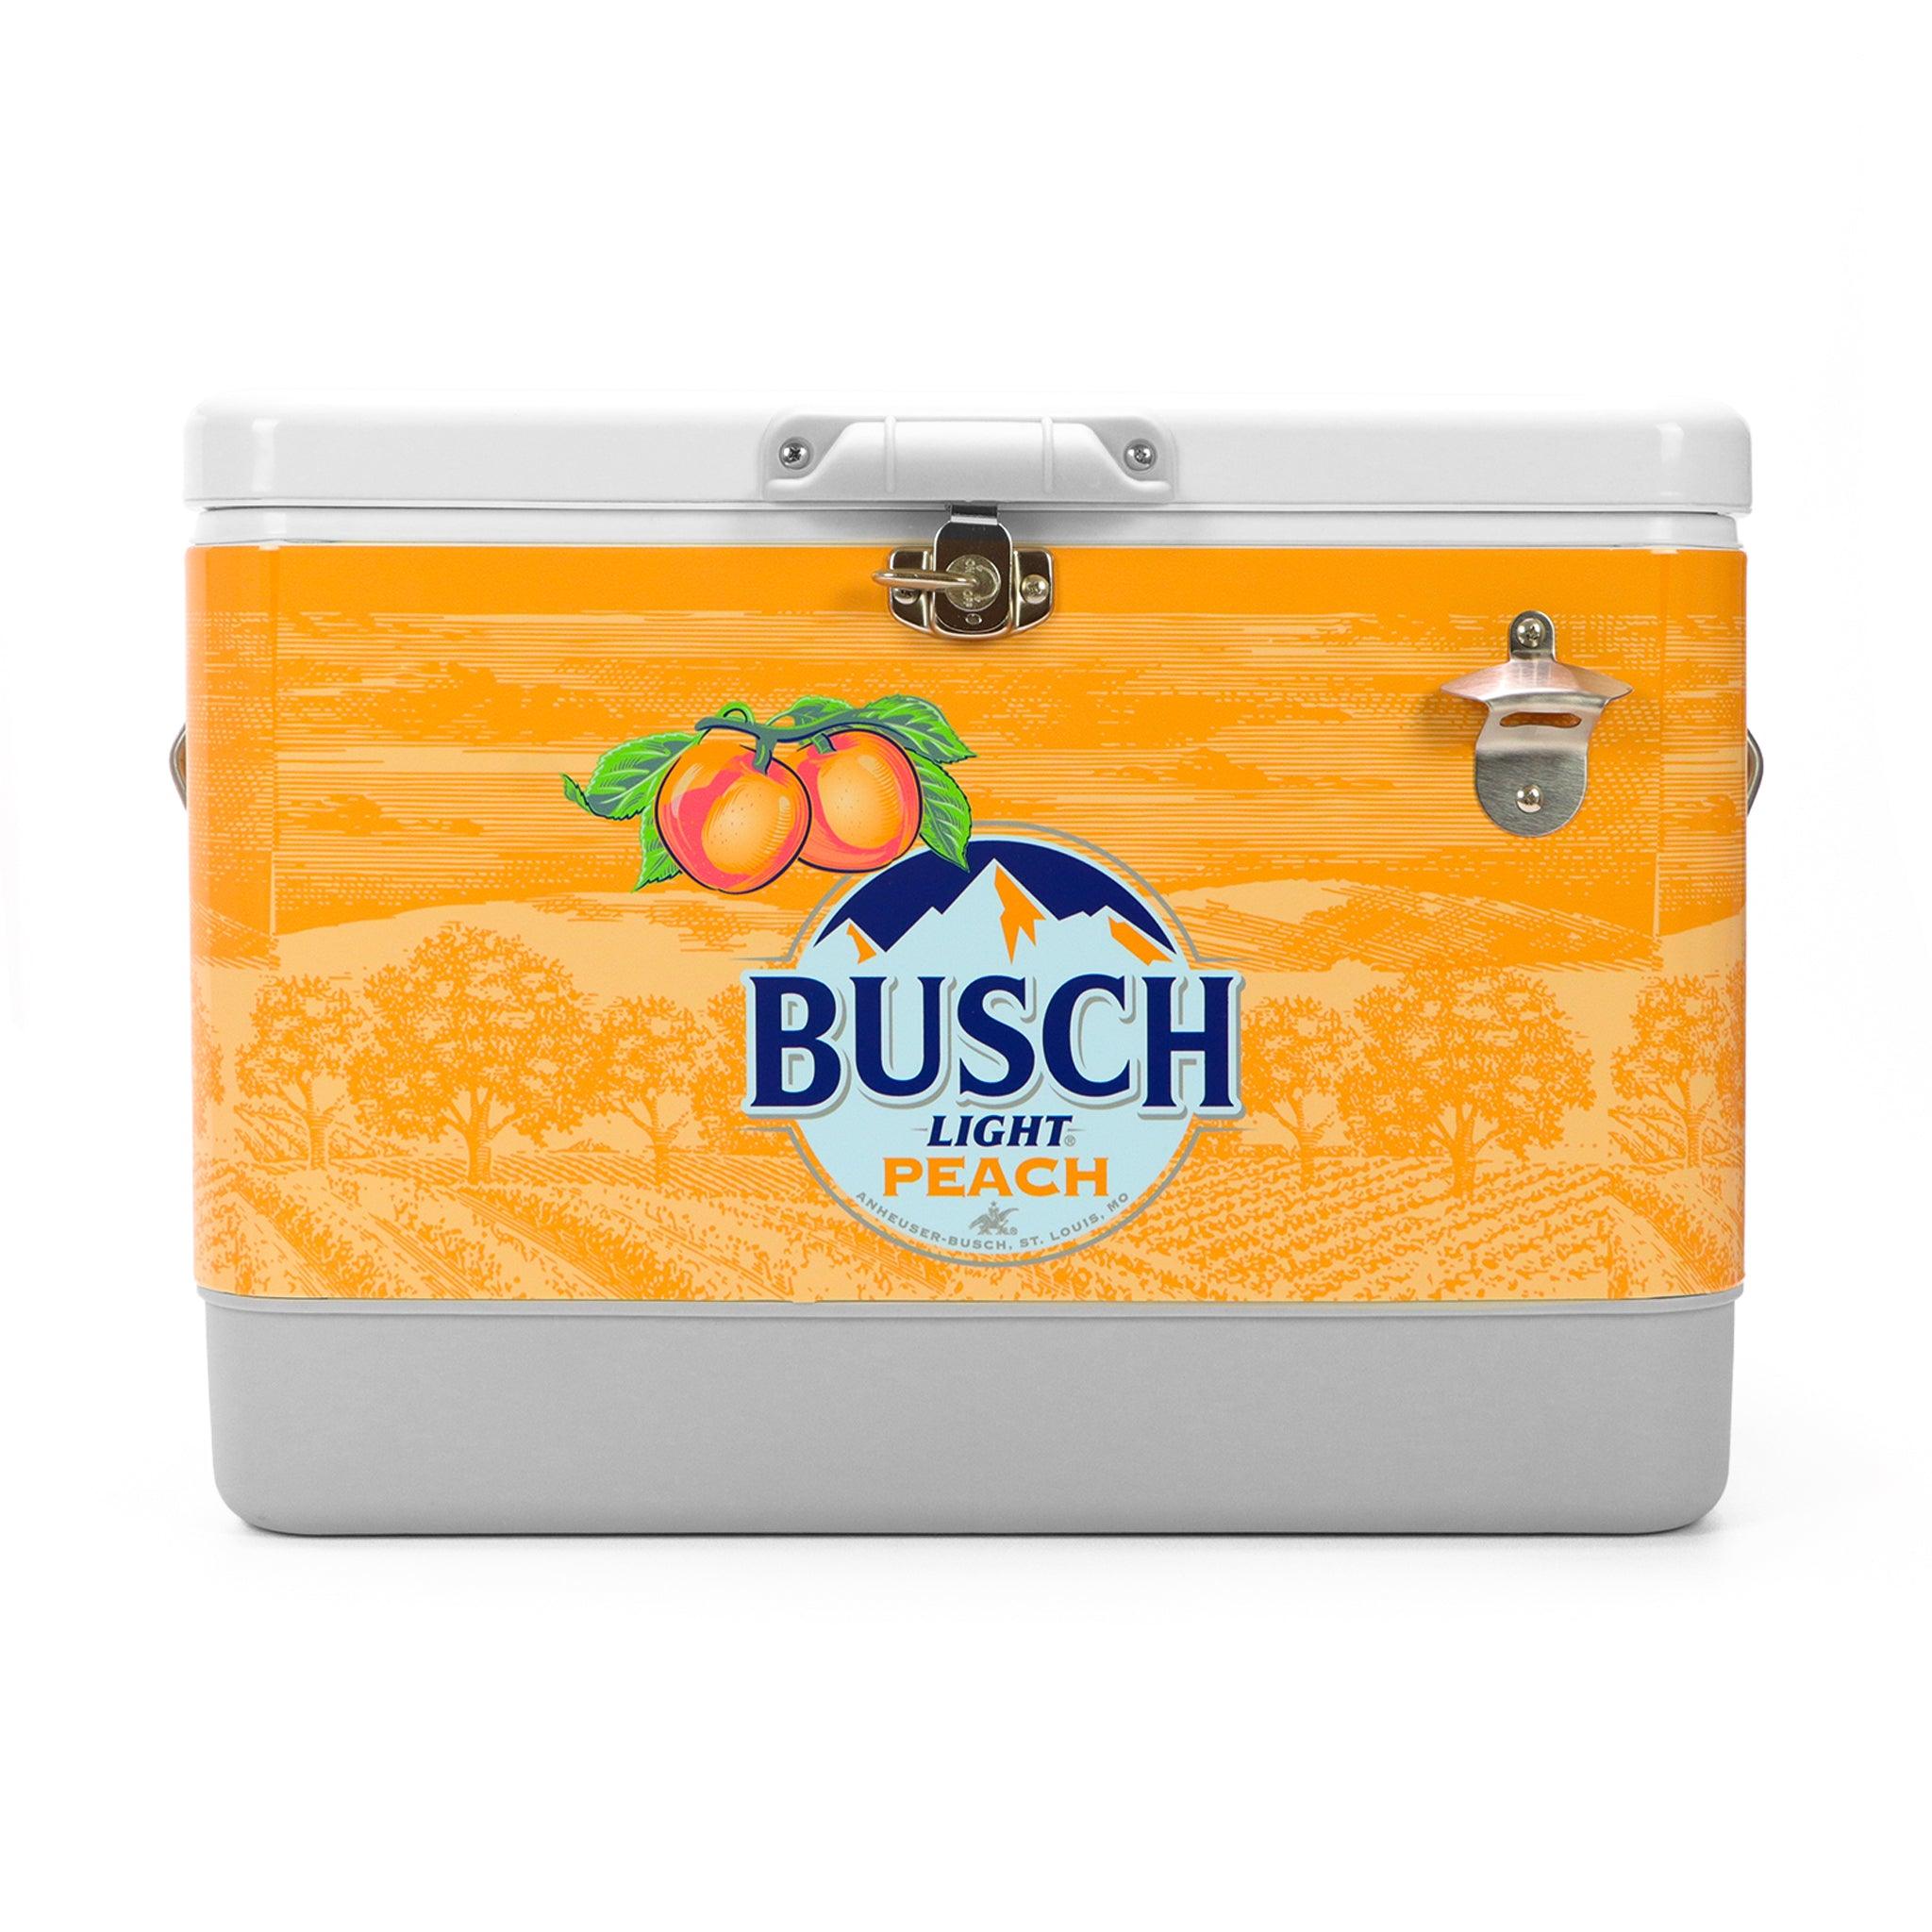 Busch Light Peach cooler - Front